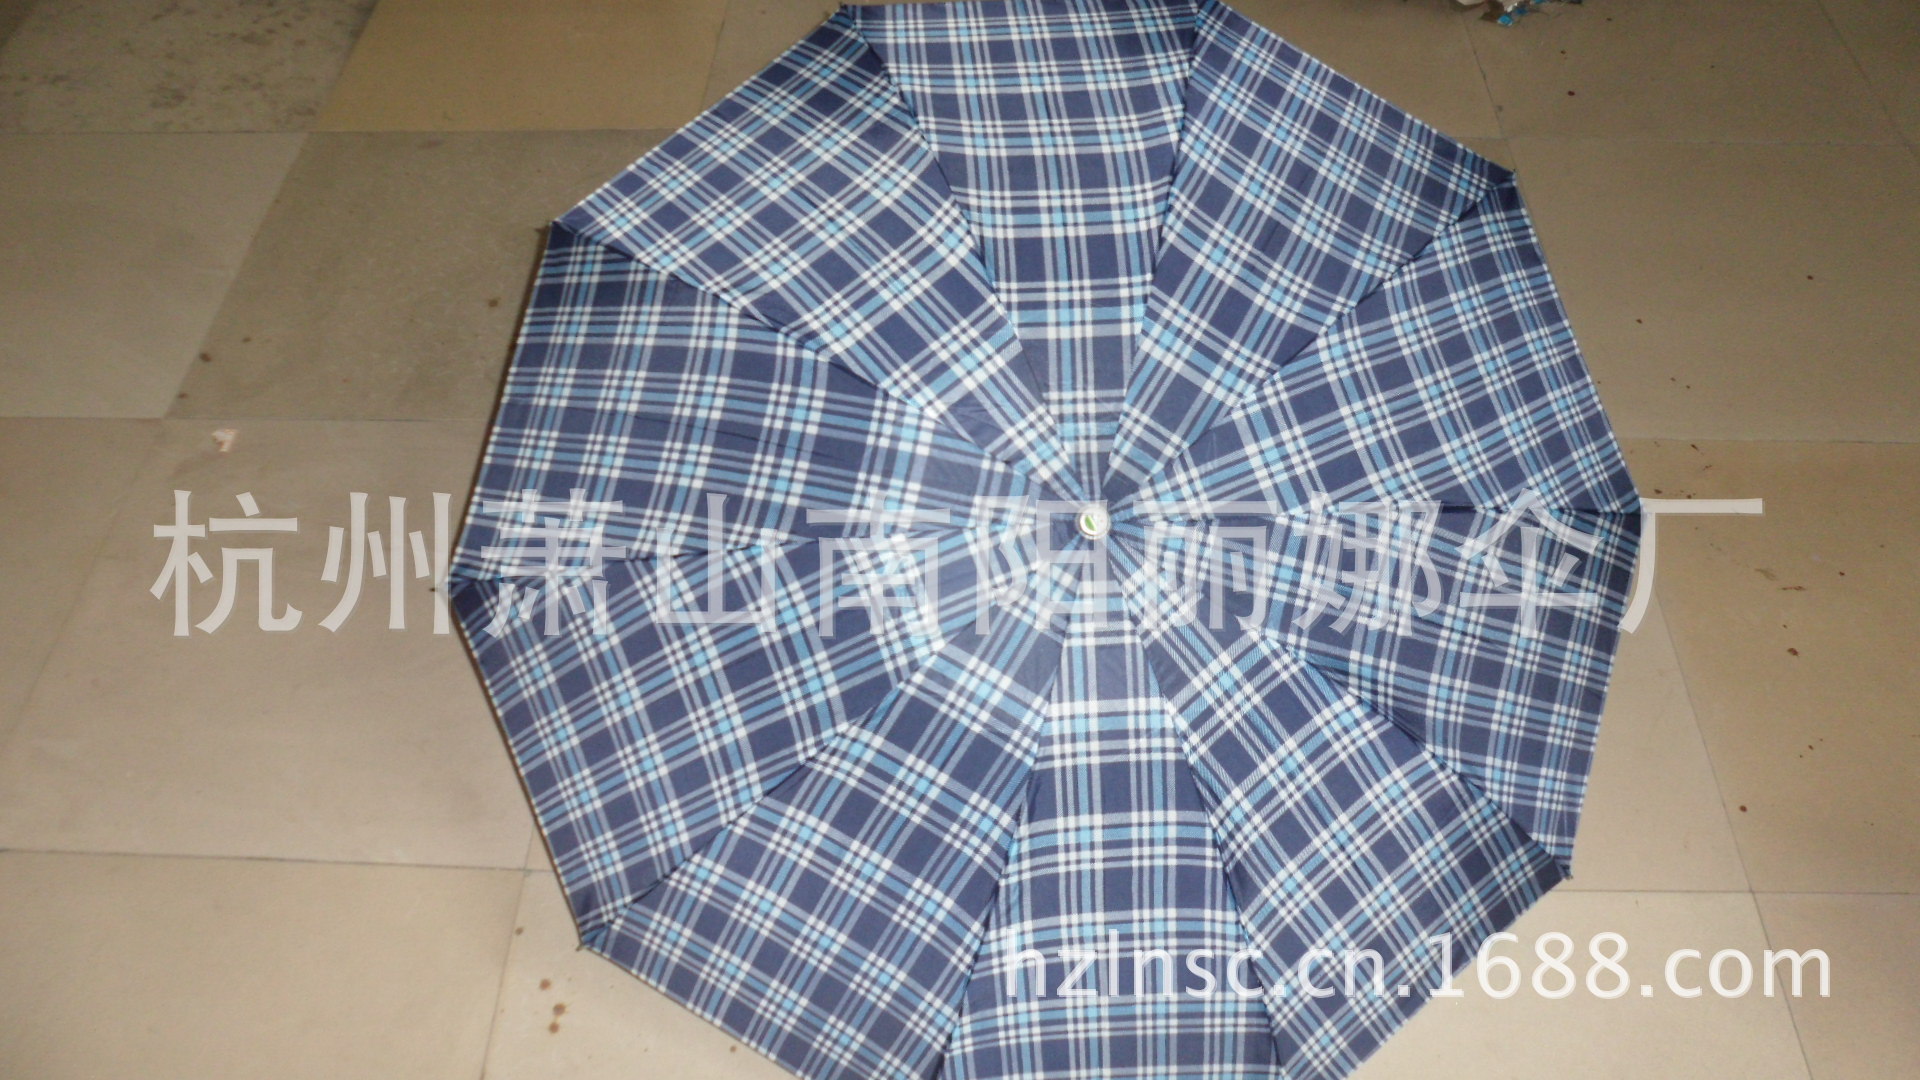 蕭山雨傘廠供應優質三折晴雨傘 新款10K滌絲格子雨傘低價批發 SAM_1532